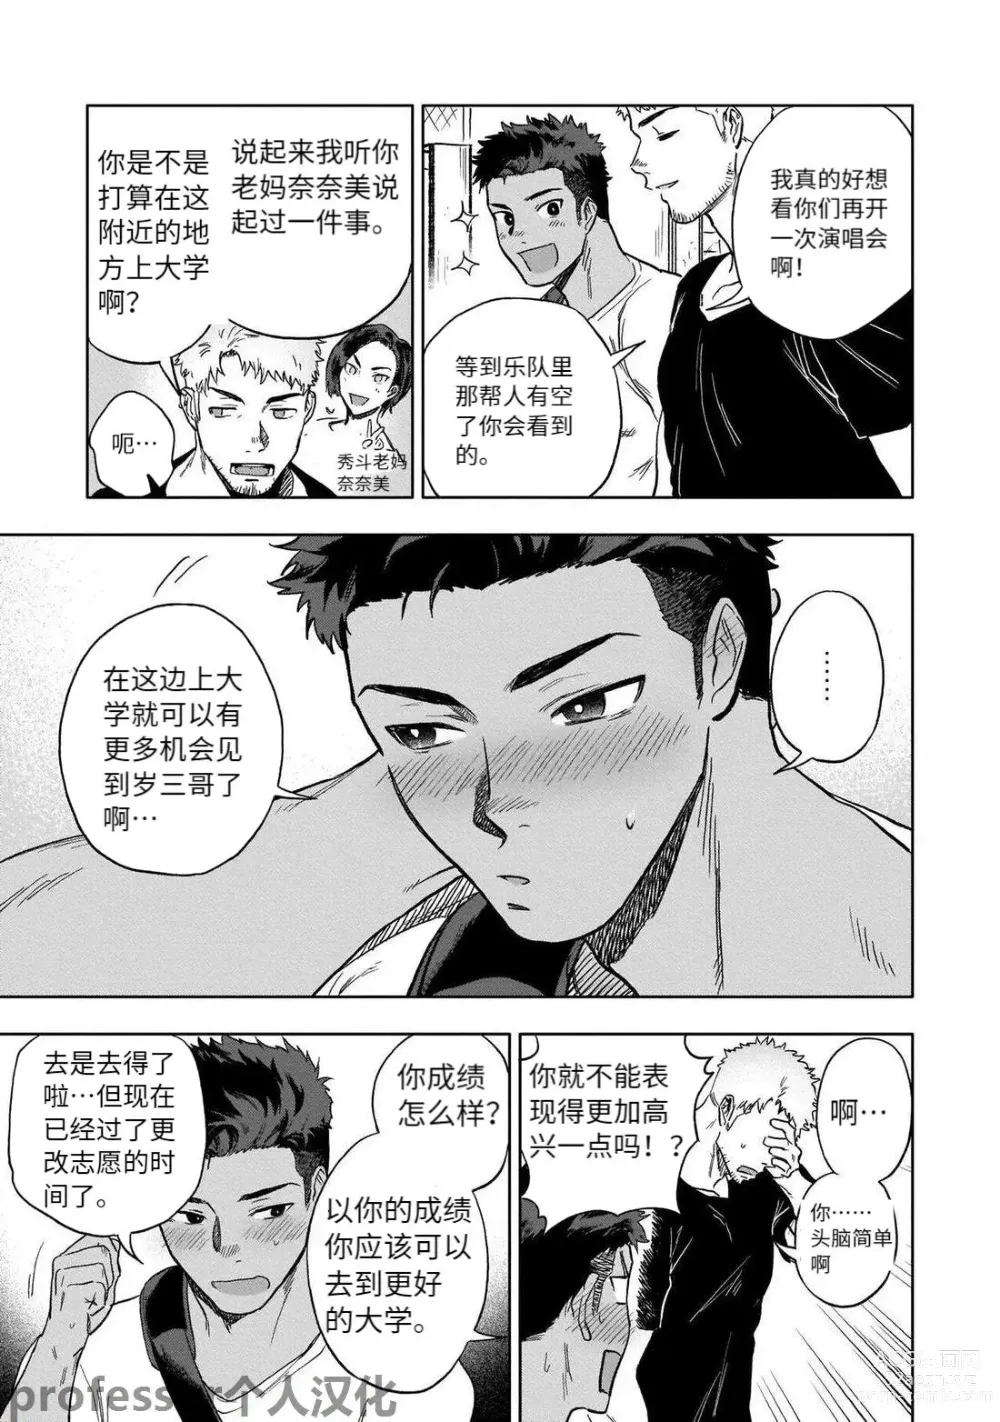 Page 5 of manga HIDK